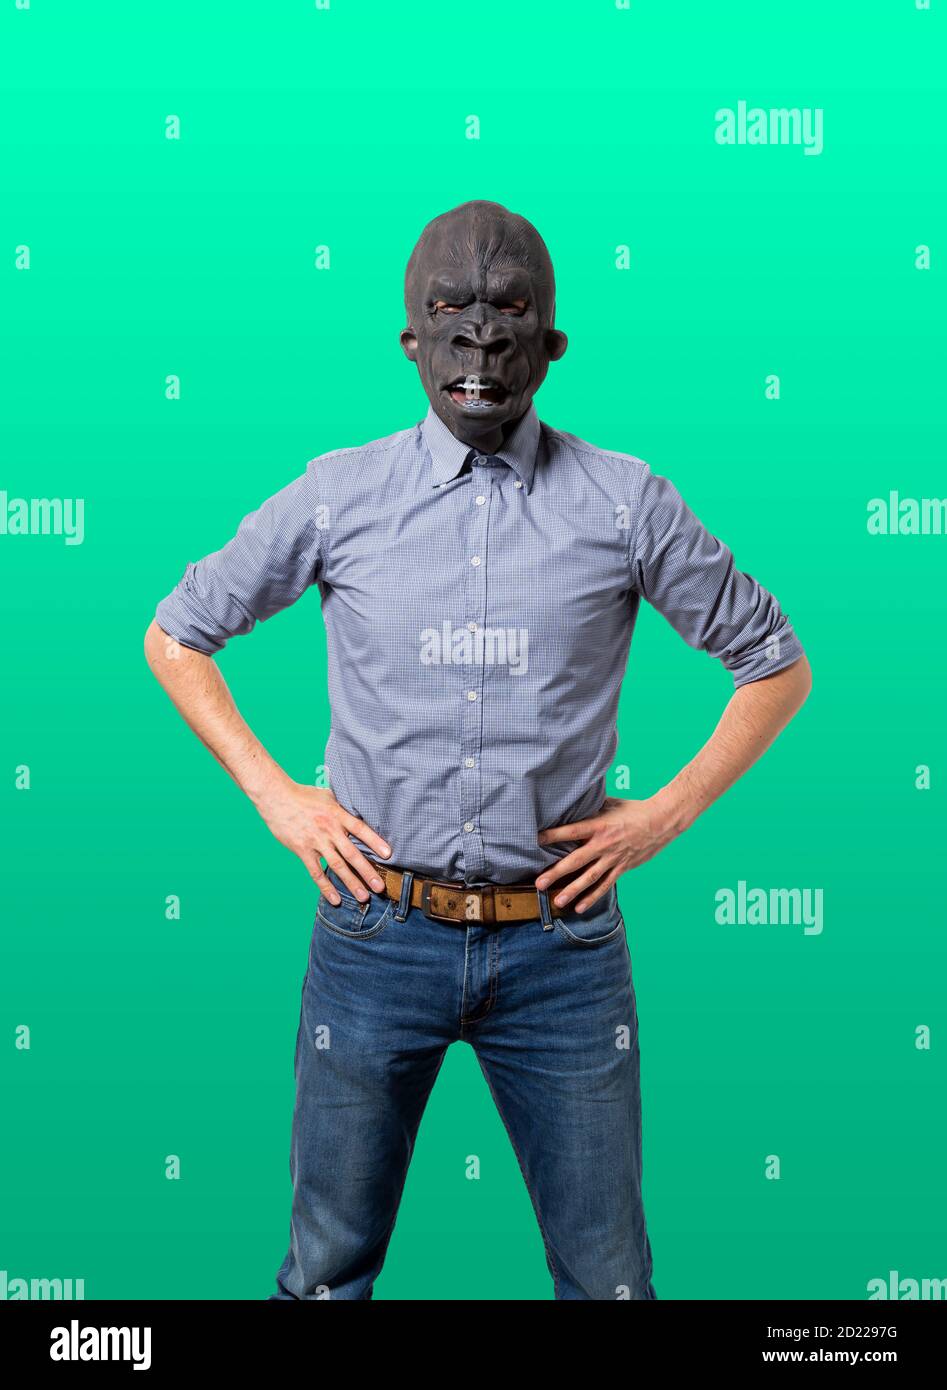 Homme portant un masque de gorille avec les mains sur les hanches face à l'appareil photo. Découpe isolée sur fond vert. Prise de vue moyenne. Banque D'Images